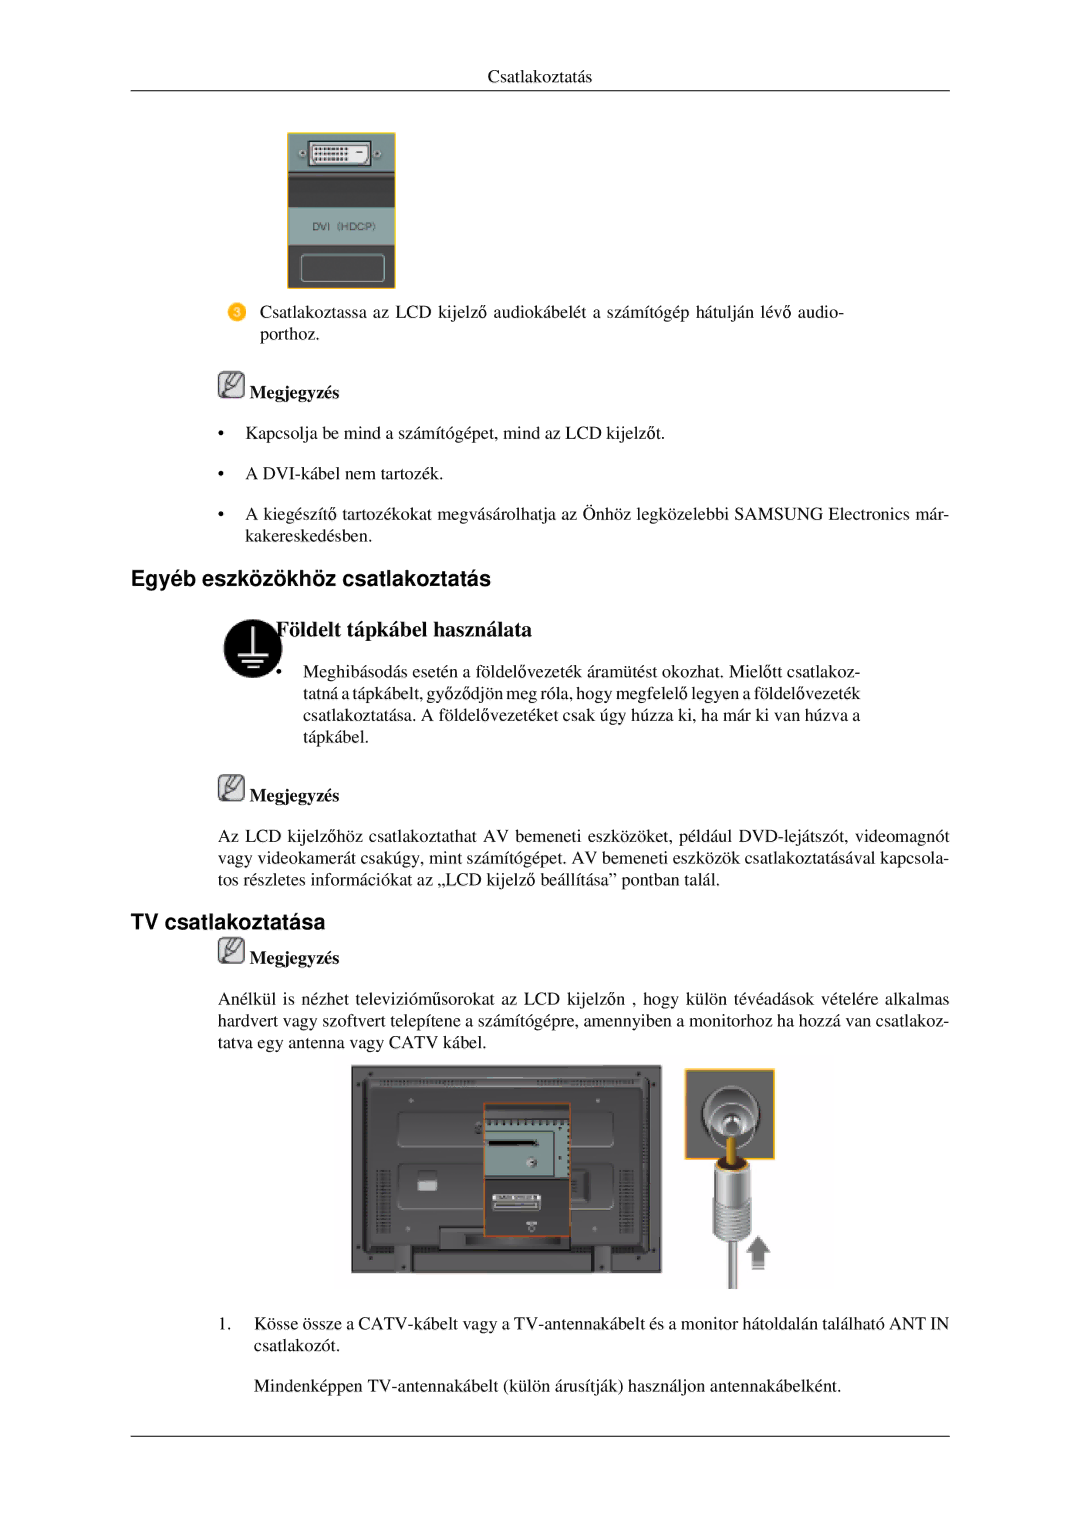 Samsung LH46MGPLGD/EN manual Egyéb eszközökhöz csatlakoztatás, TV csatlakoztatása 